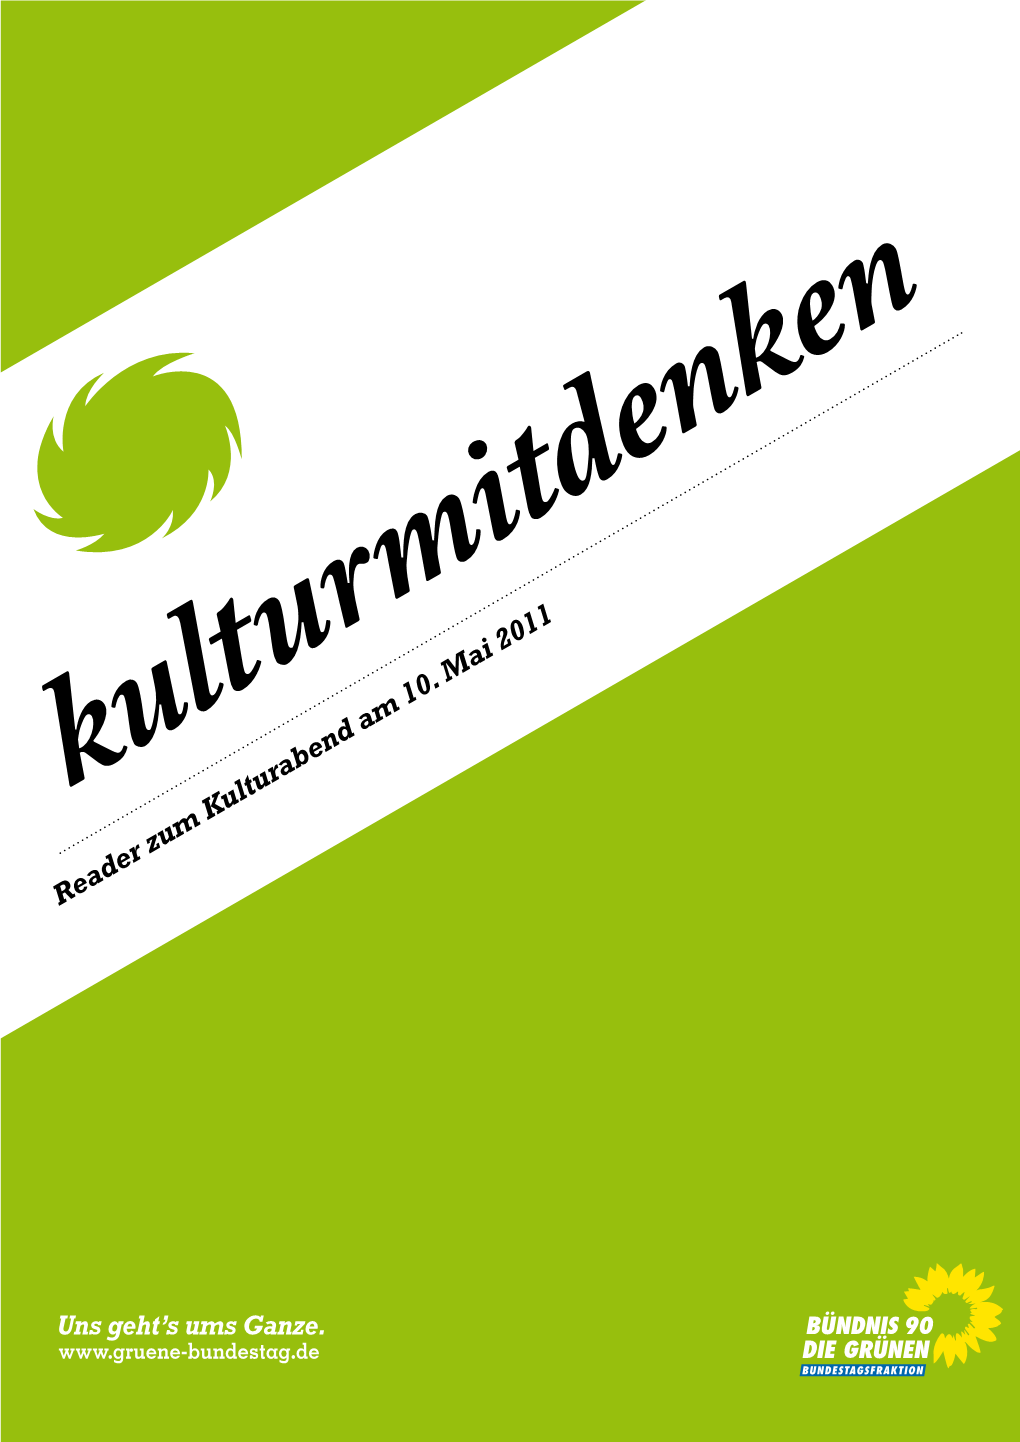 Reader Zum Kulturabend Am 10. Mai 2011